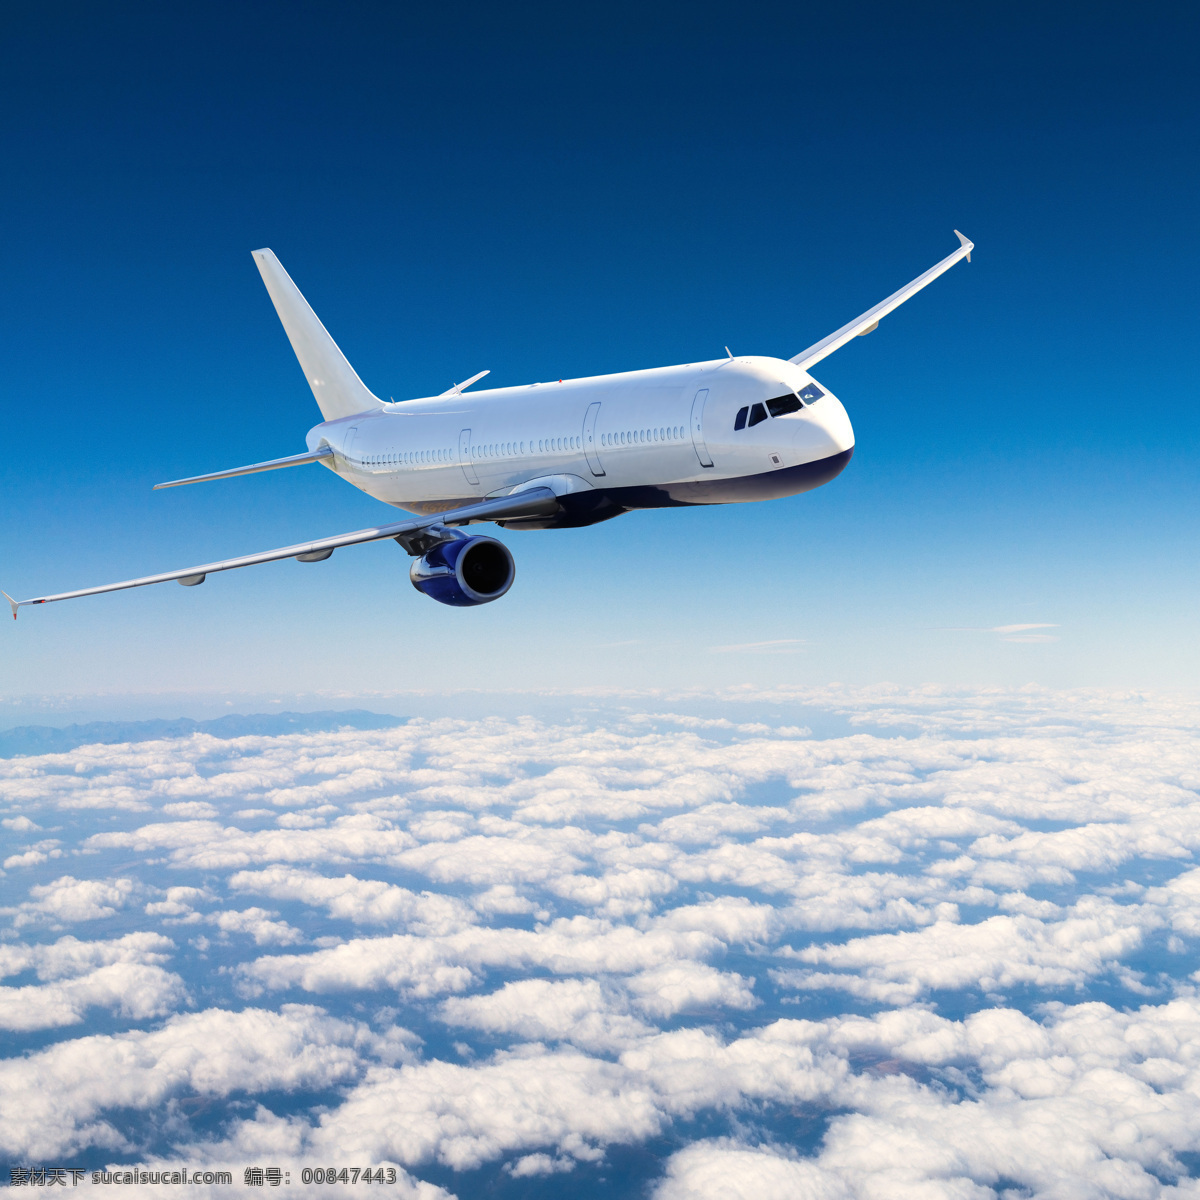 民航客机 客机图片 飞机素材 飞机图片 飞机展板 飞机飞翔 梦想起航 客运飞机 航空公司 飞机 飞机剪影 现代科技 交通工具